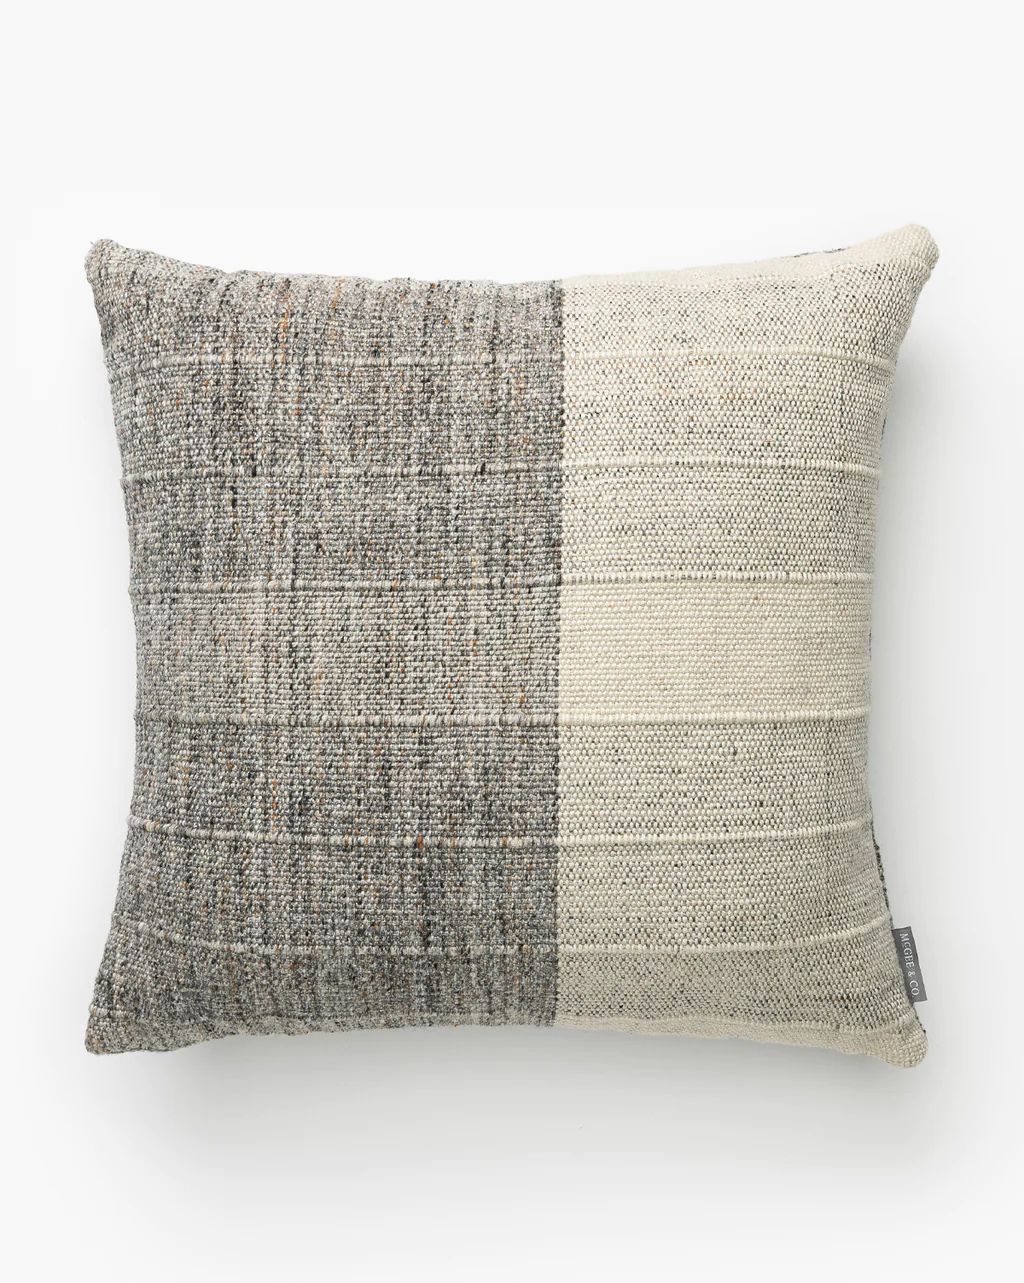 Hewson Indoor/Outdoor Pillow | McGee & Co.